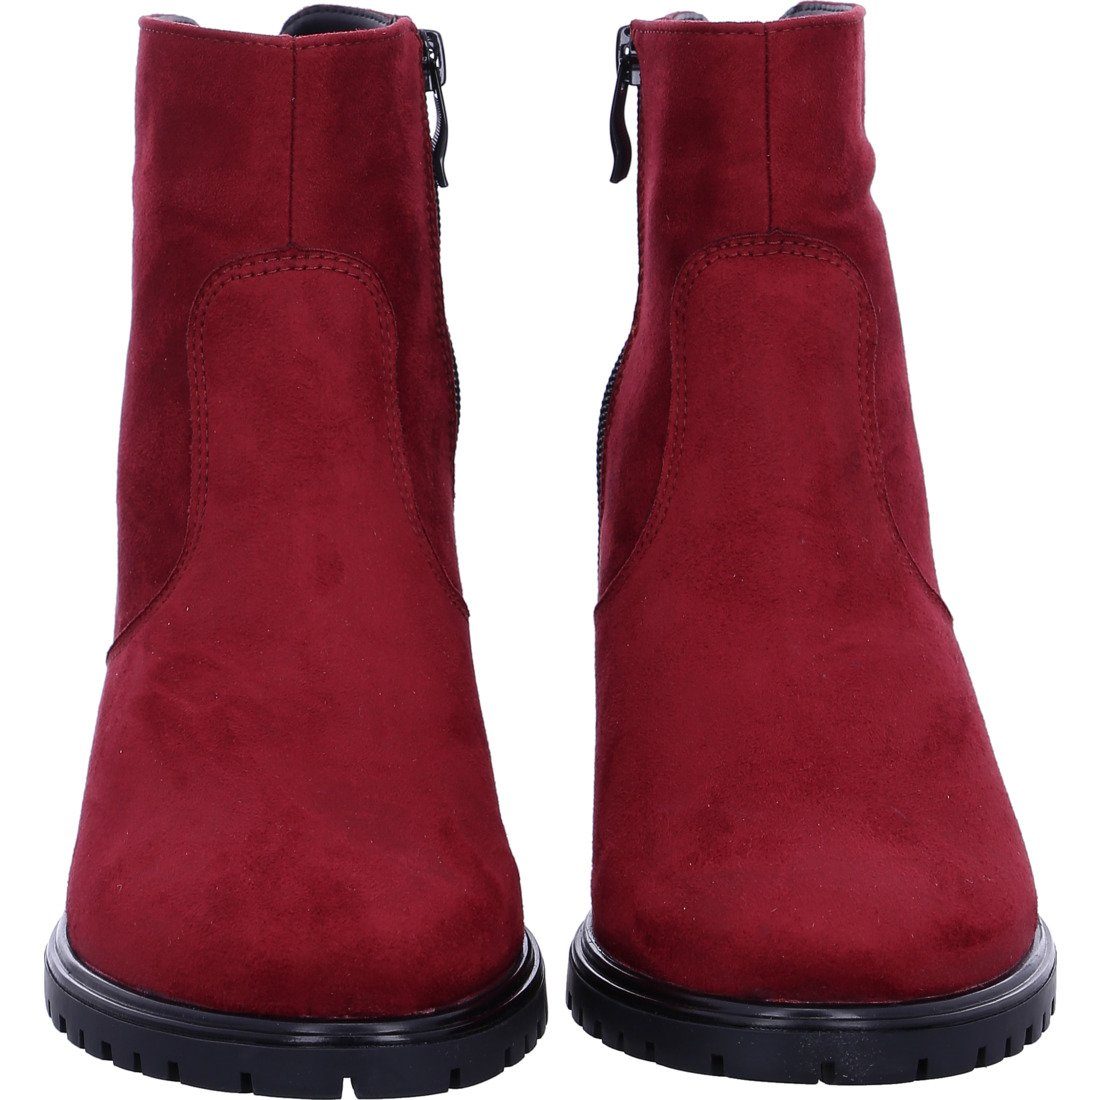 Schuhe, Textil rot - Ara Stiefelette Ronda Damen Stiefelette 049770 Ara